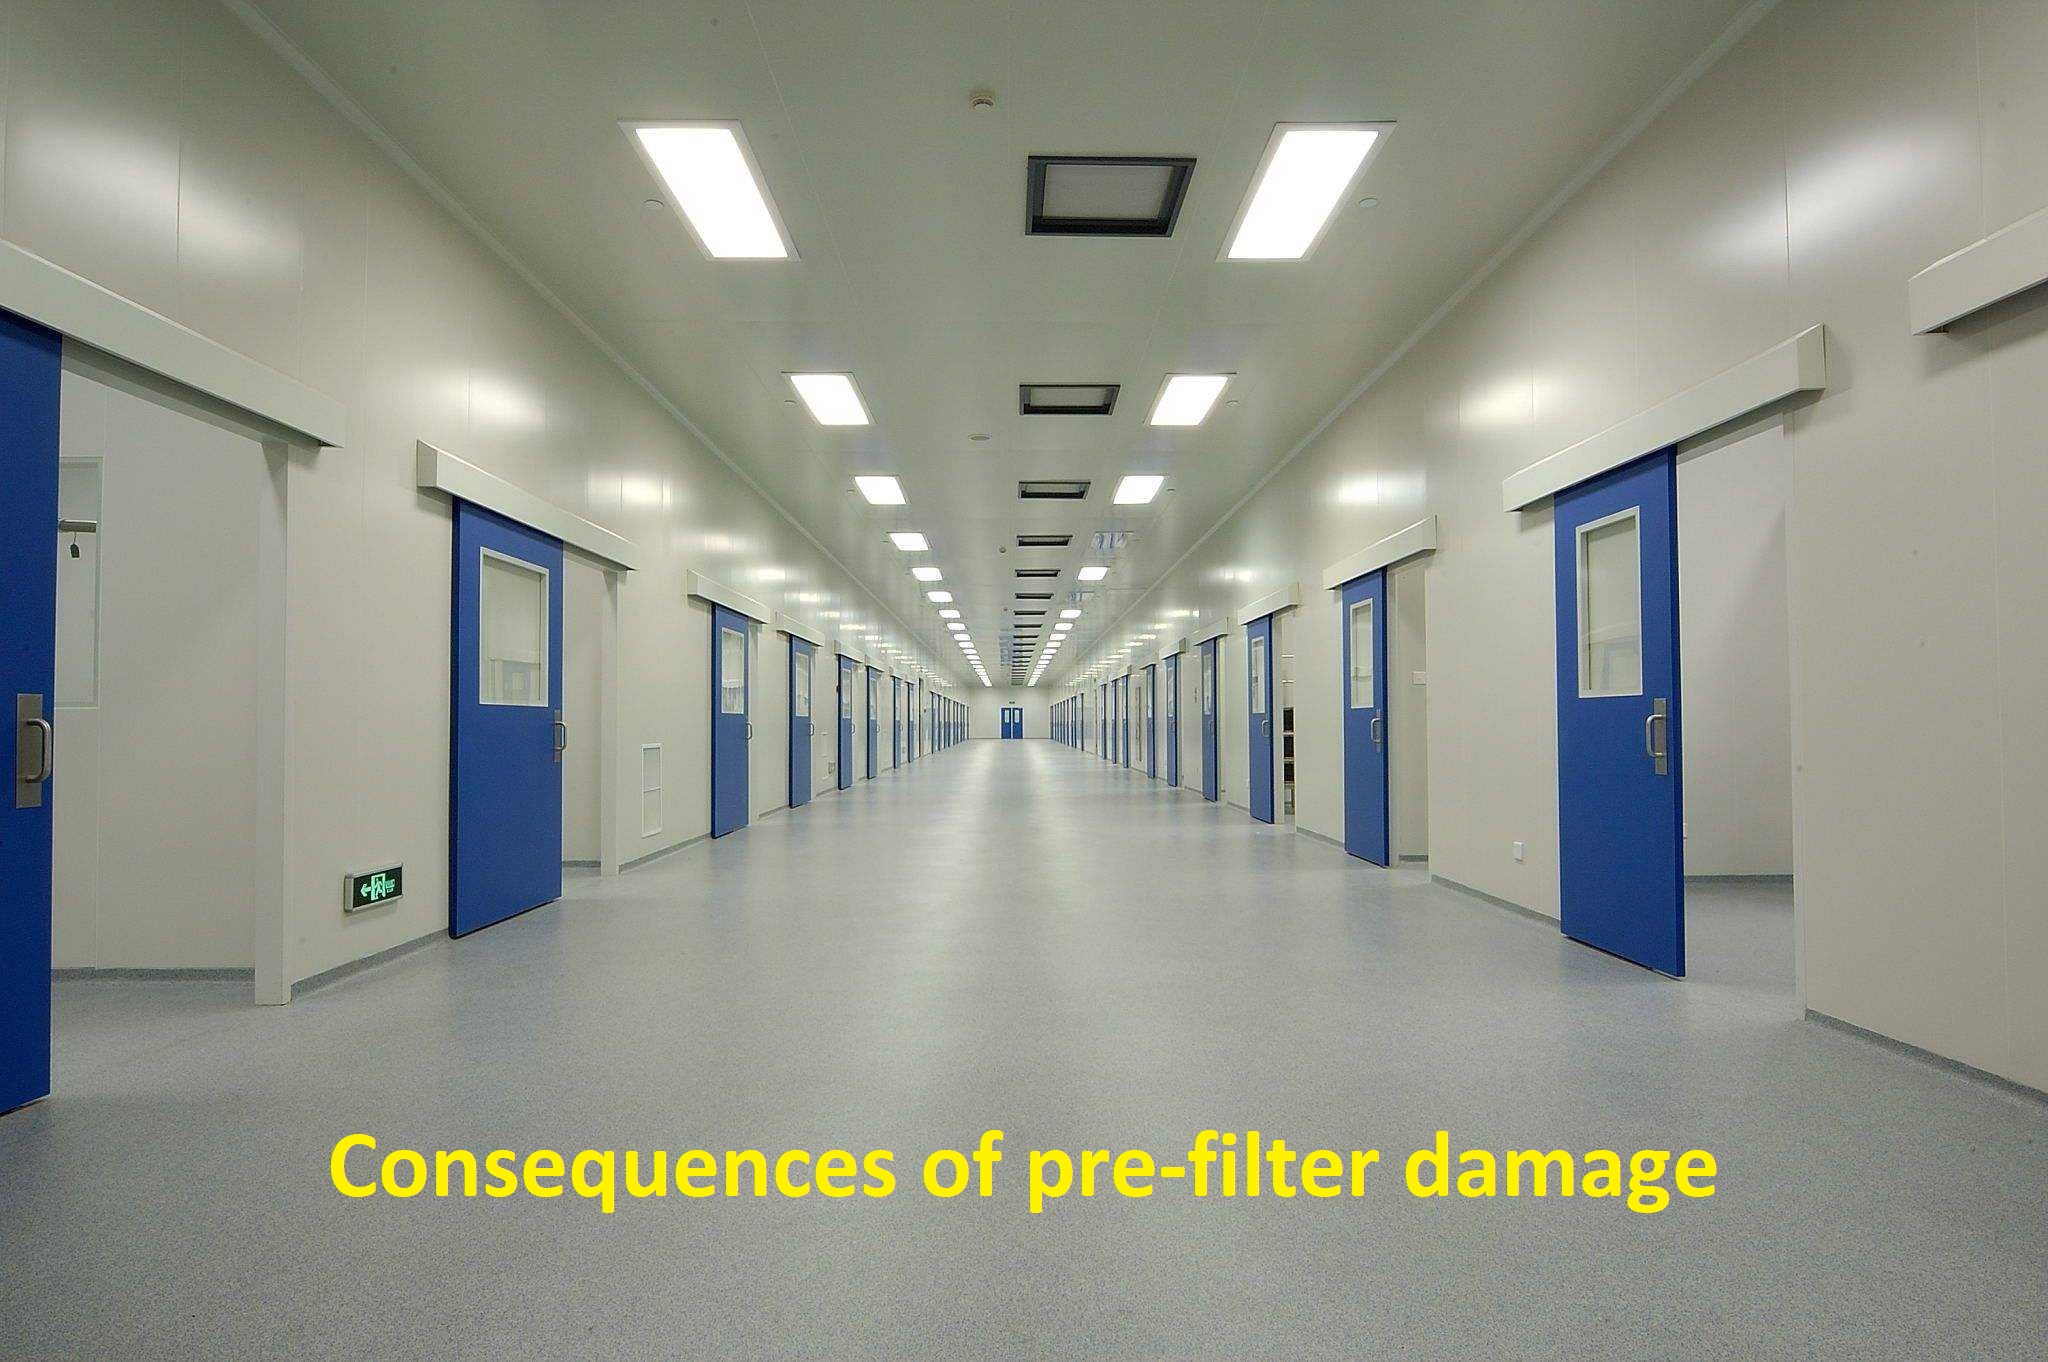 Filtre öncesi hasarın temiz oda-sonuçlarında hava filtresinin saha örneği